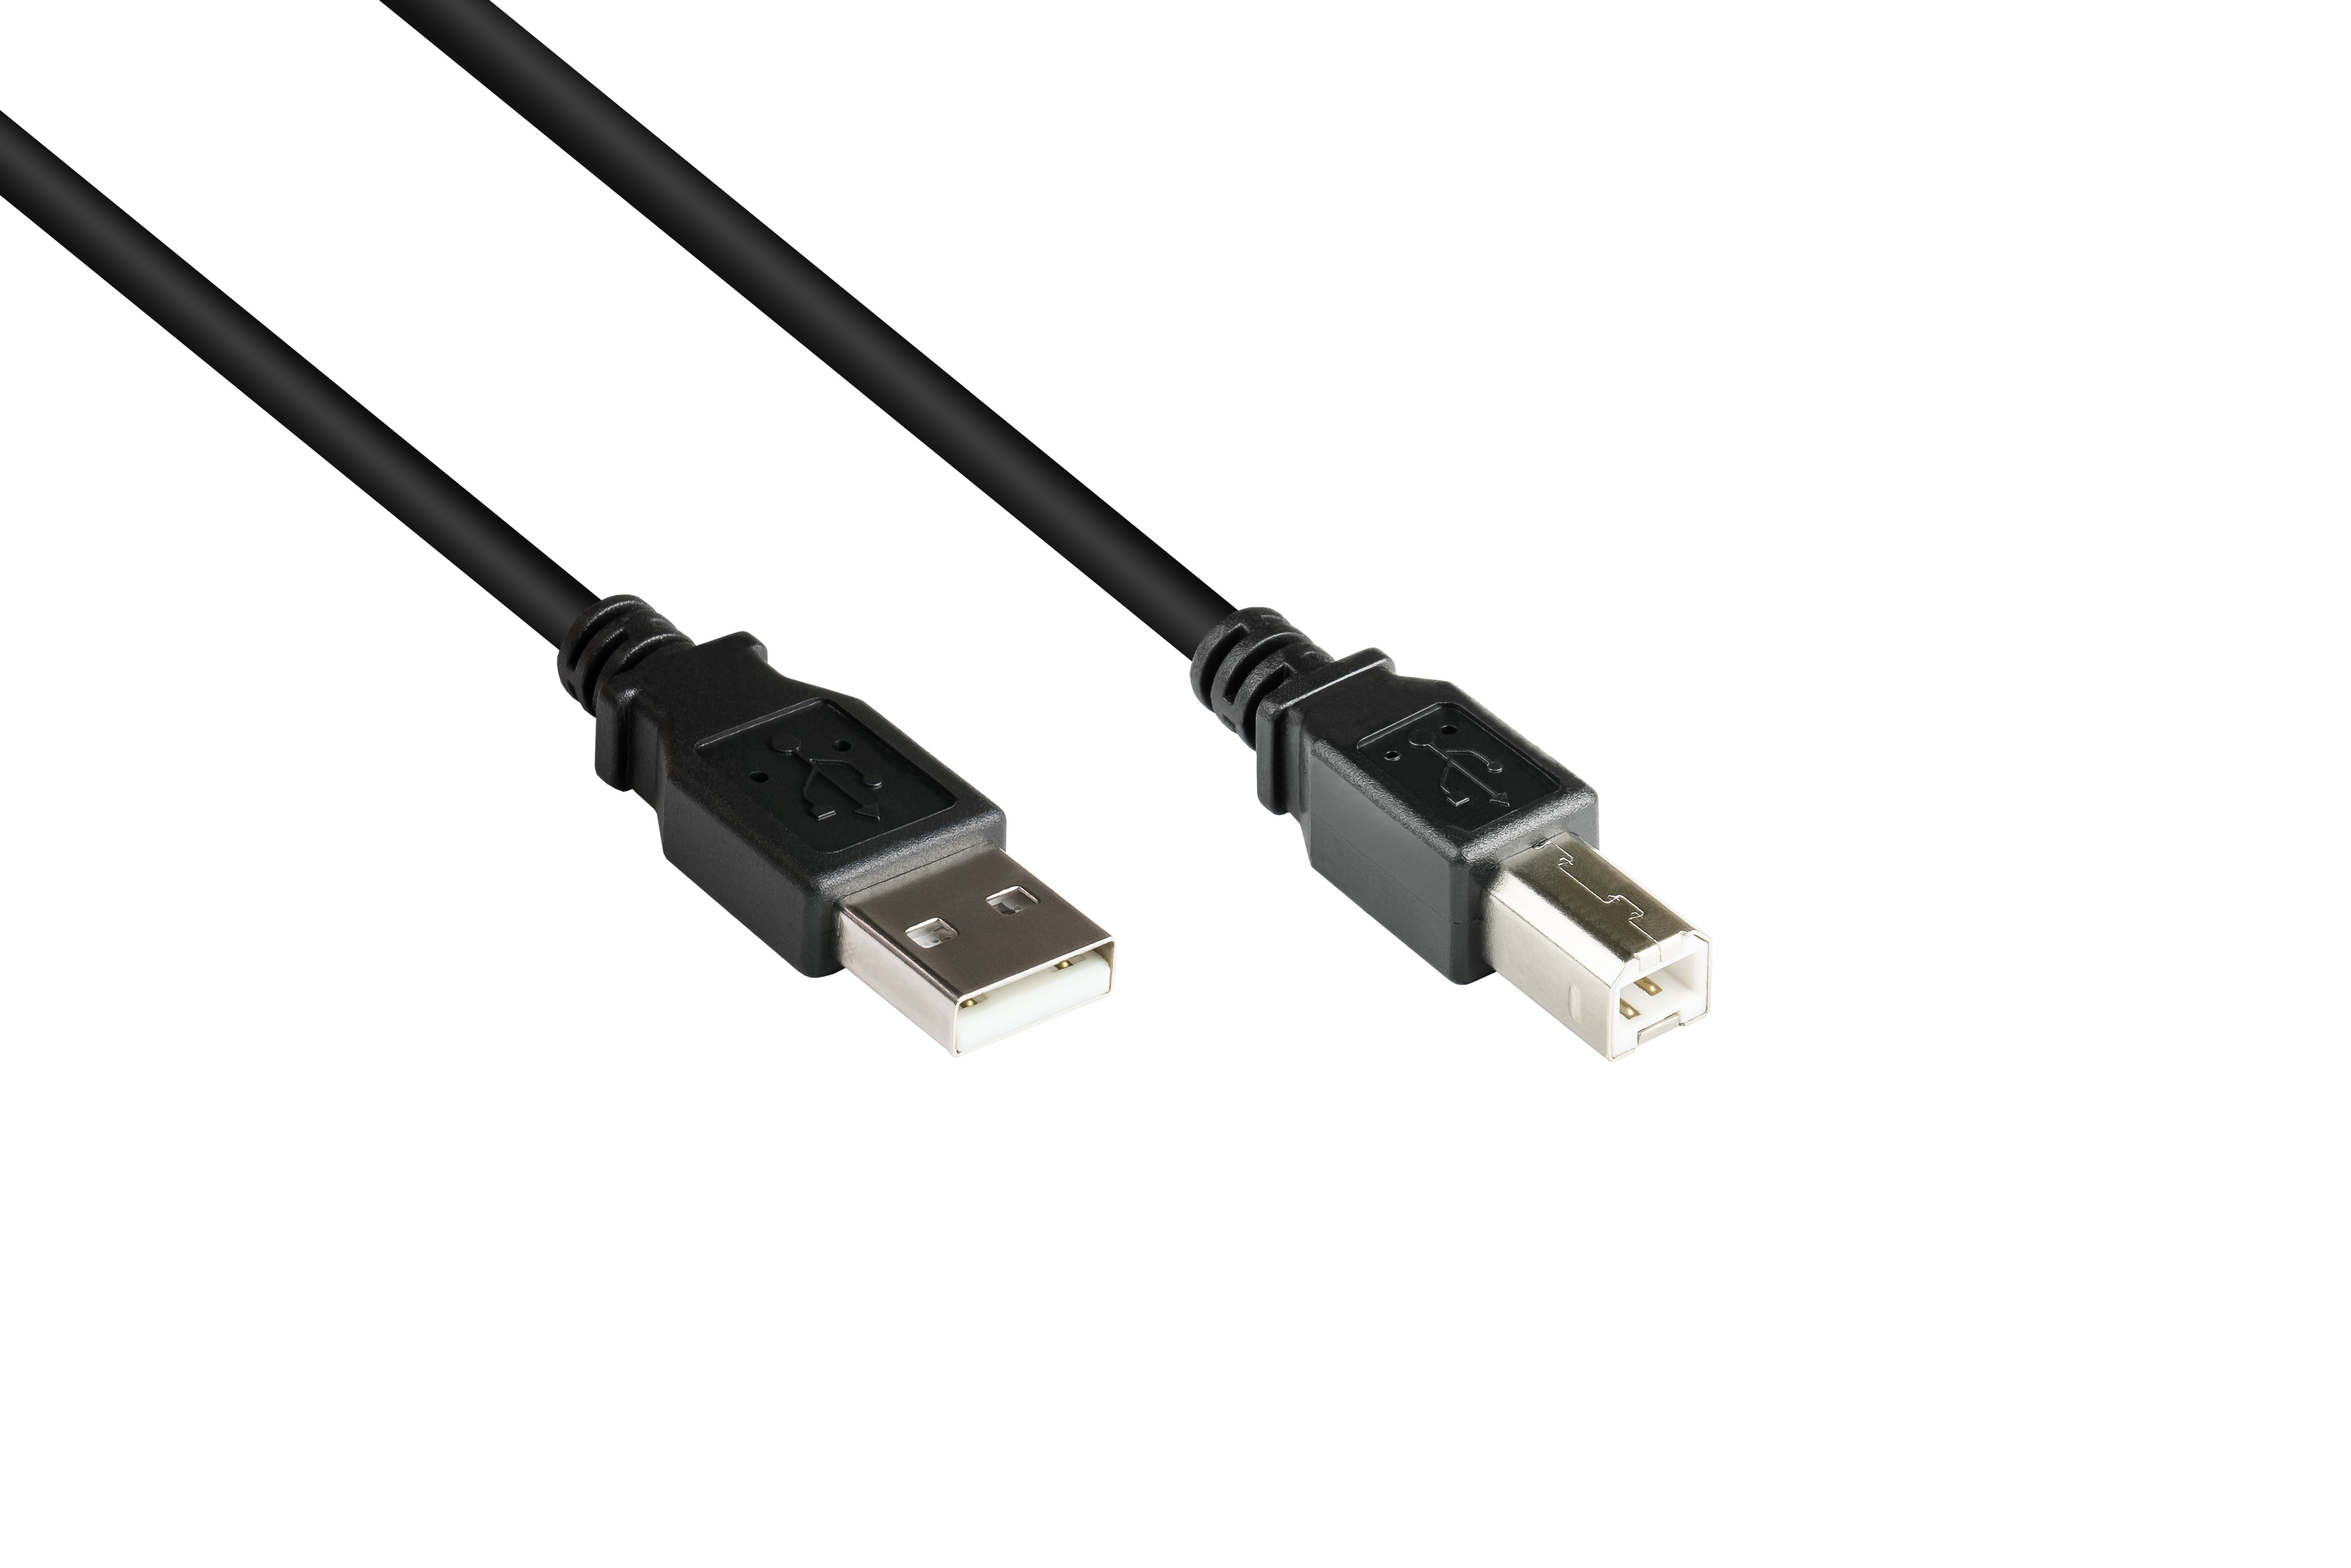 A Stecker schwarz Anschlusskabel B, 2.0 Stecker USB CONNECTIONS an GOOD